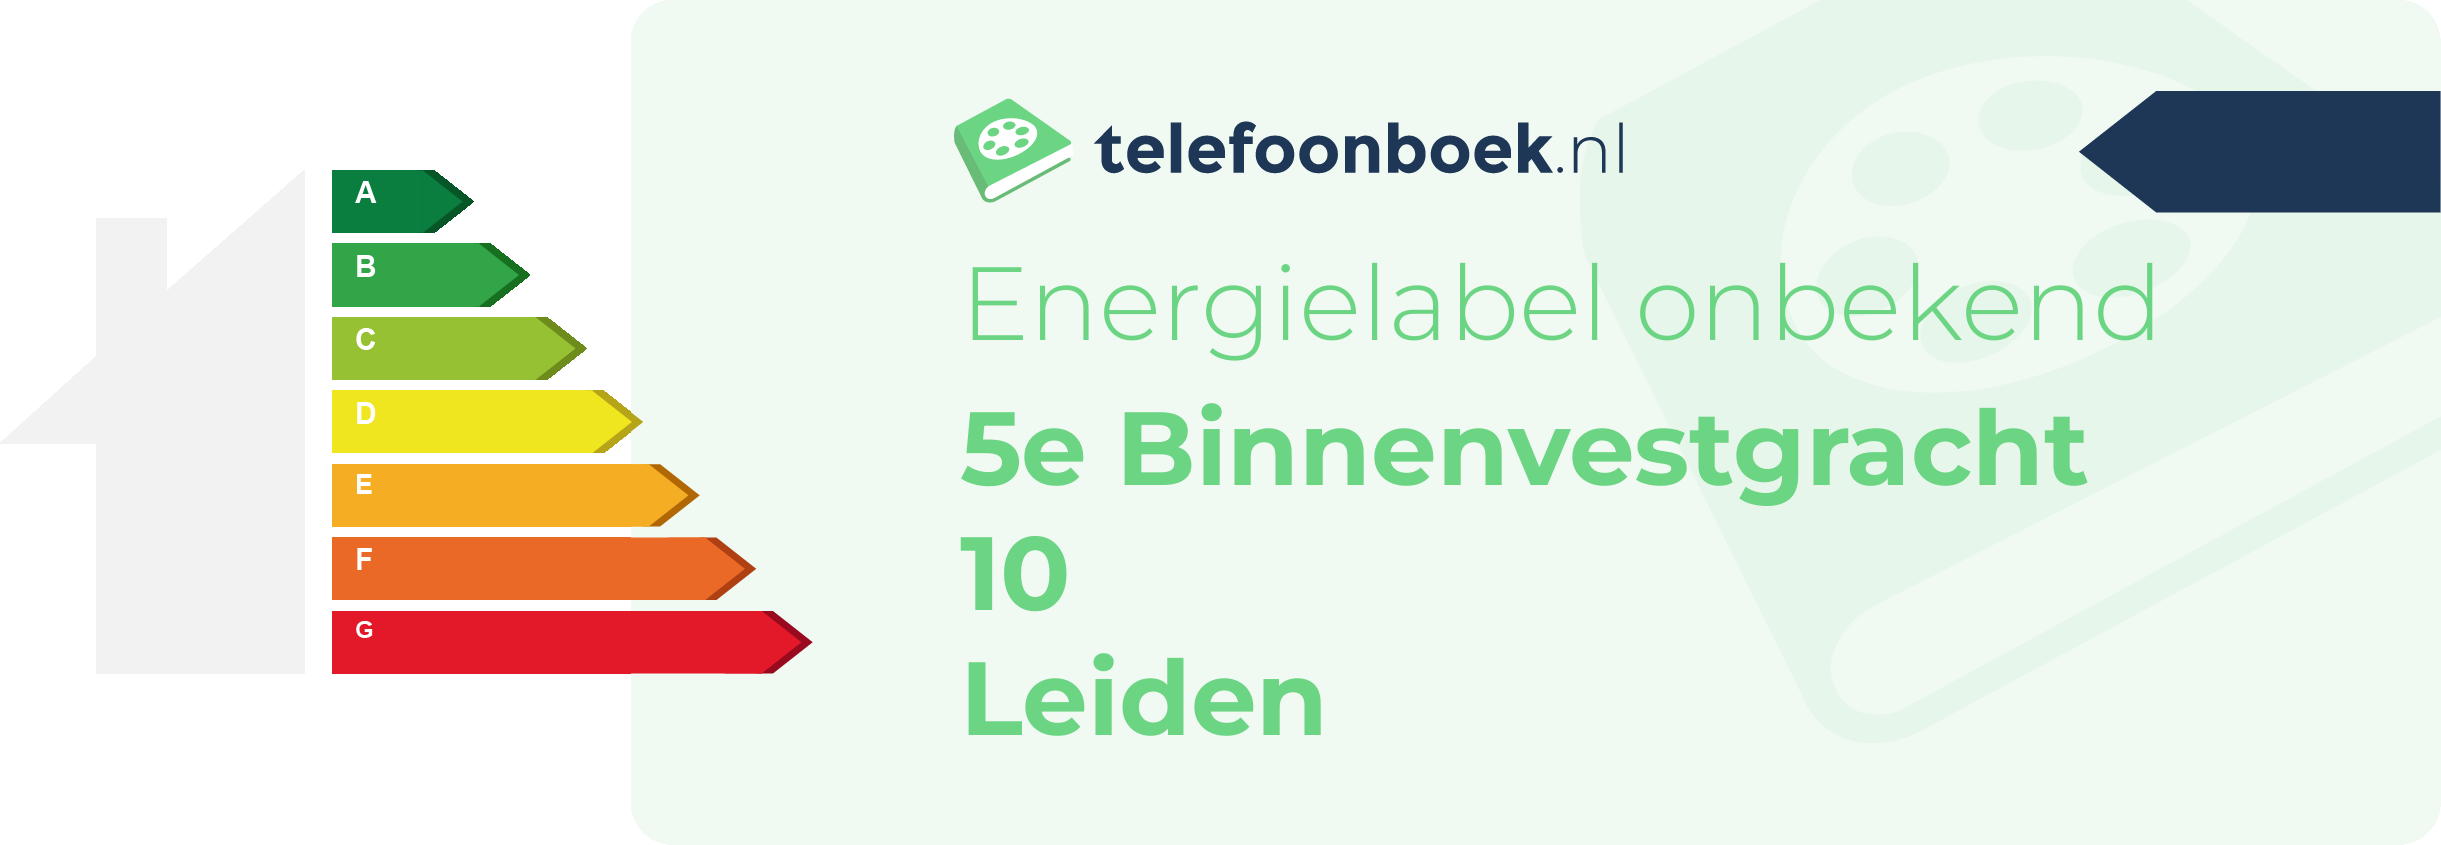 Energielabel 5e Binnenvestgracht 10 Leiden